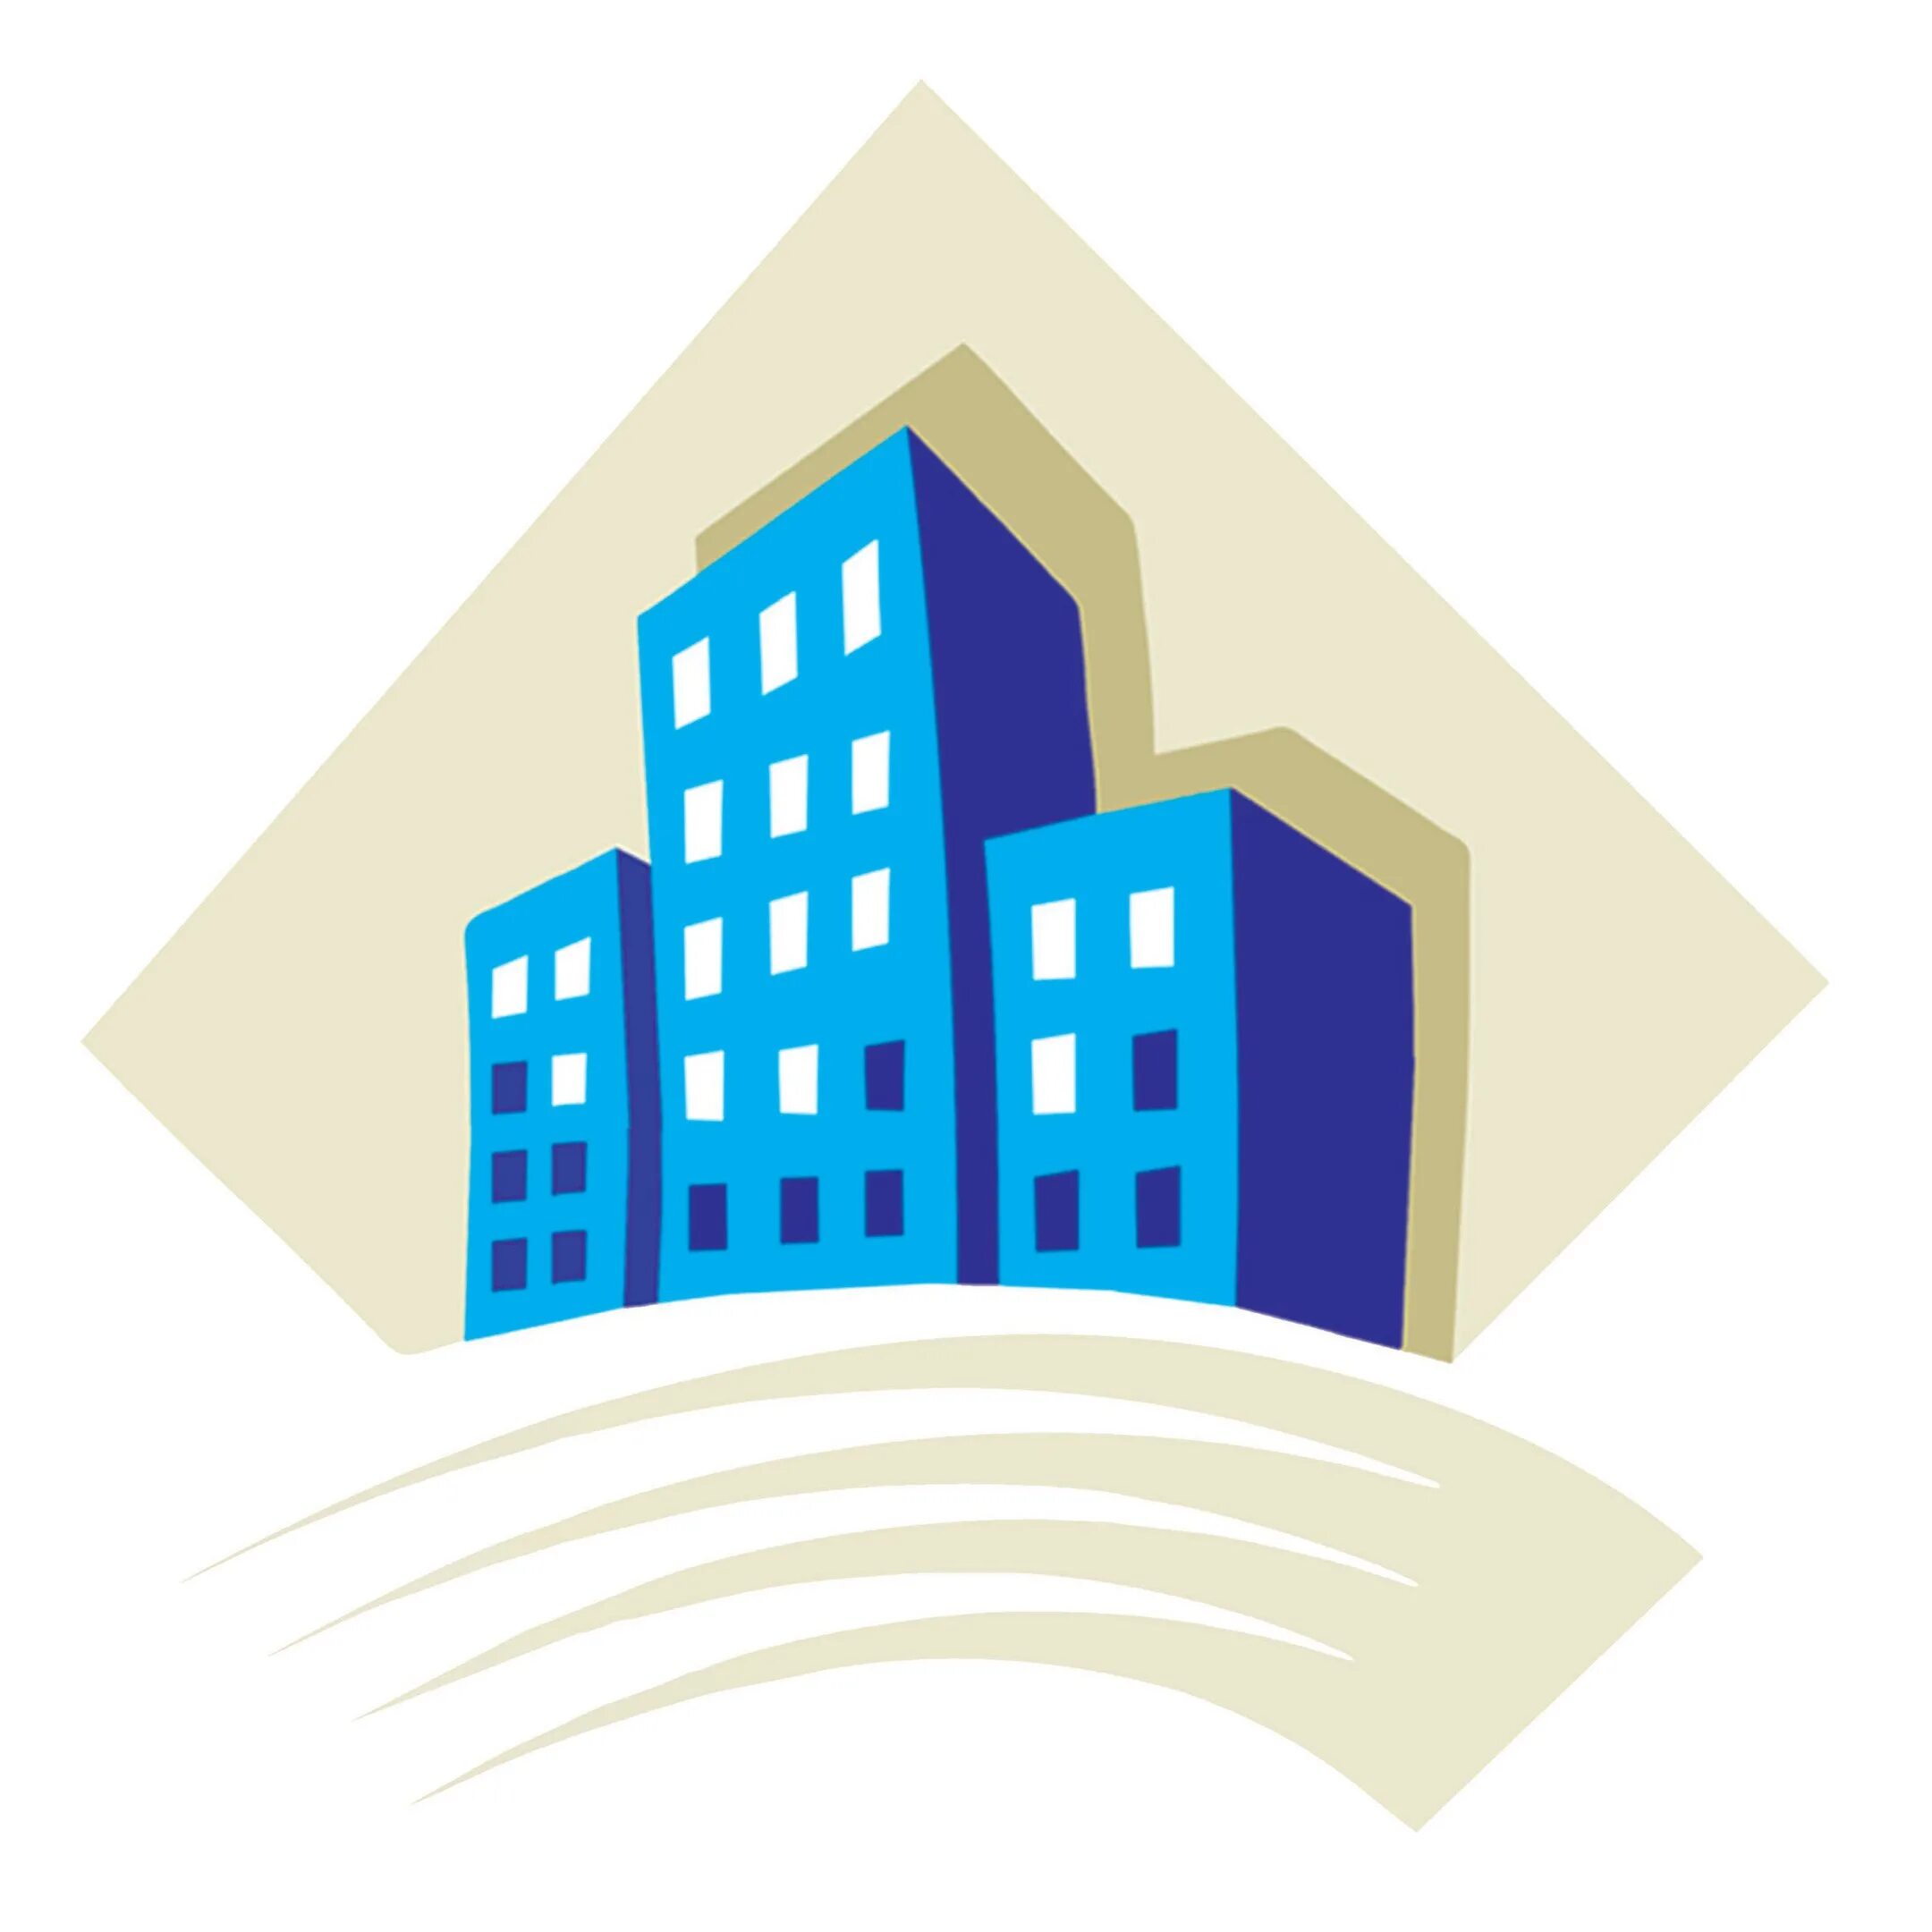 Ооо ук жилищный. Капитальный ремонт МКД. Значок для строительной фирмы. Логотип управляющей компании ЖКХ. Лого для управляющей компании дом.